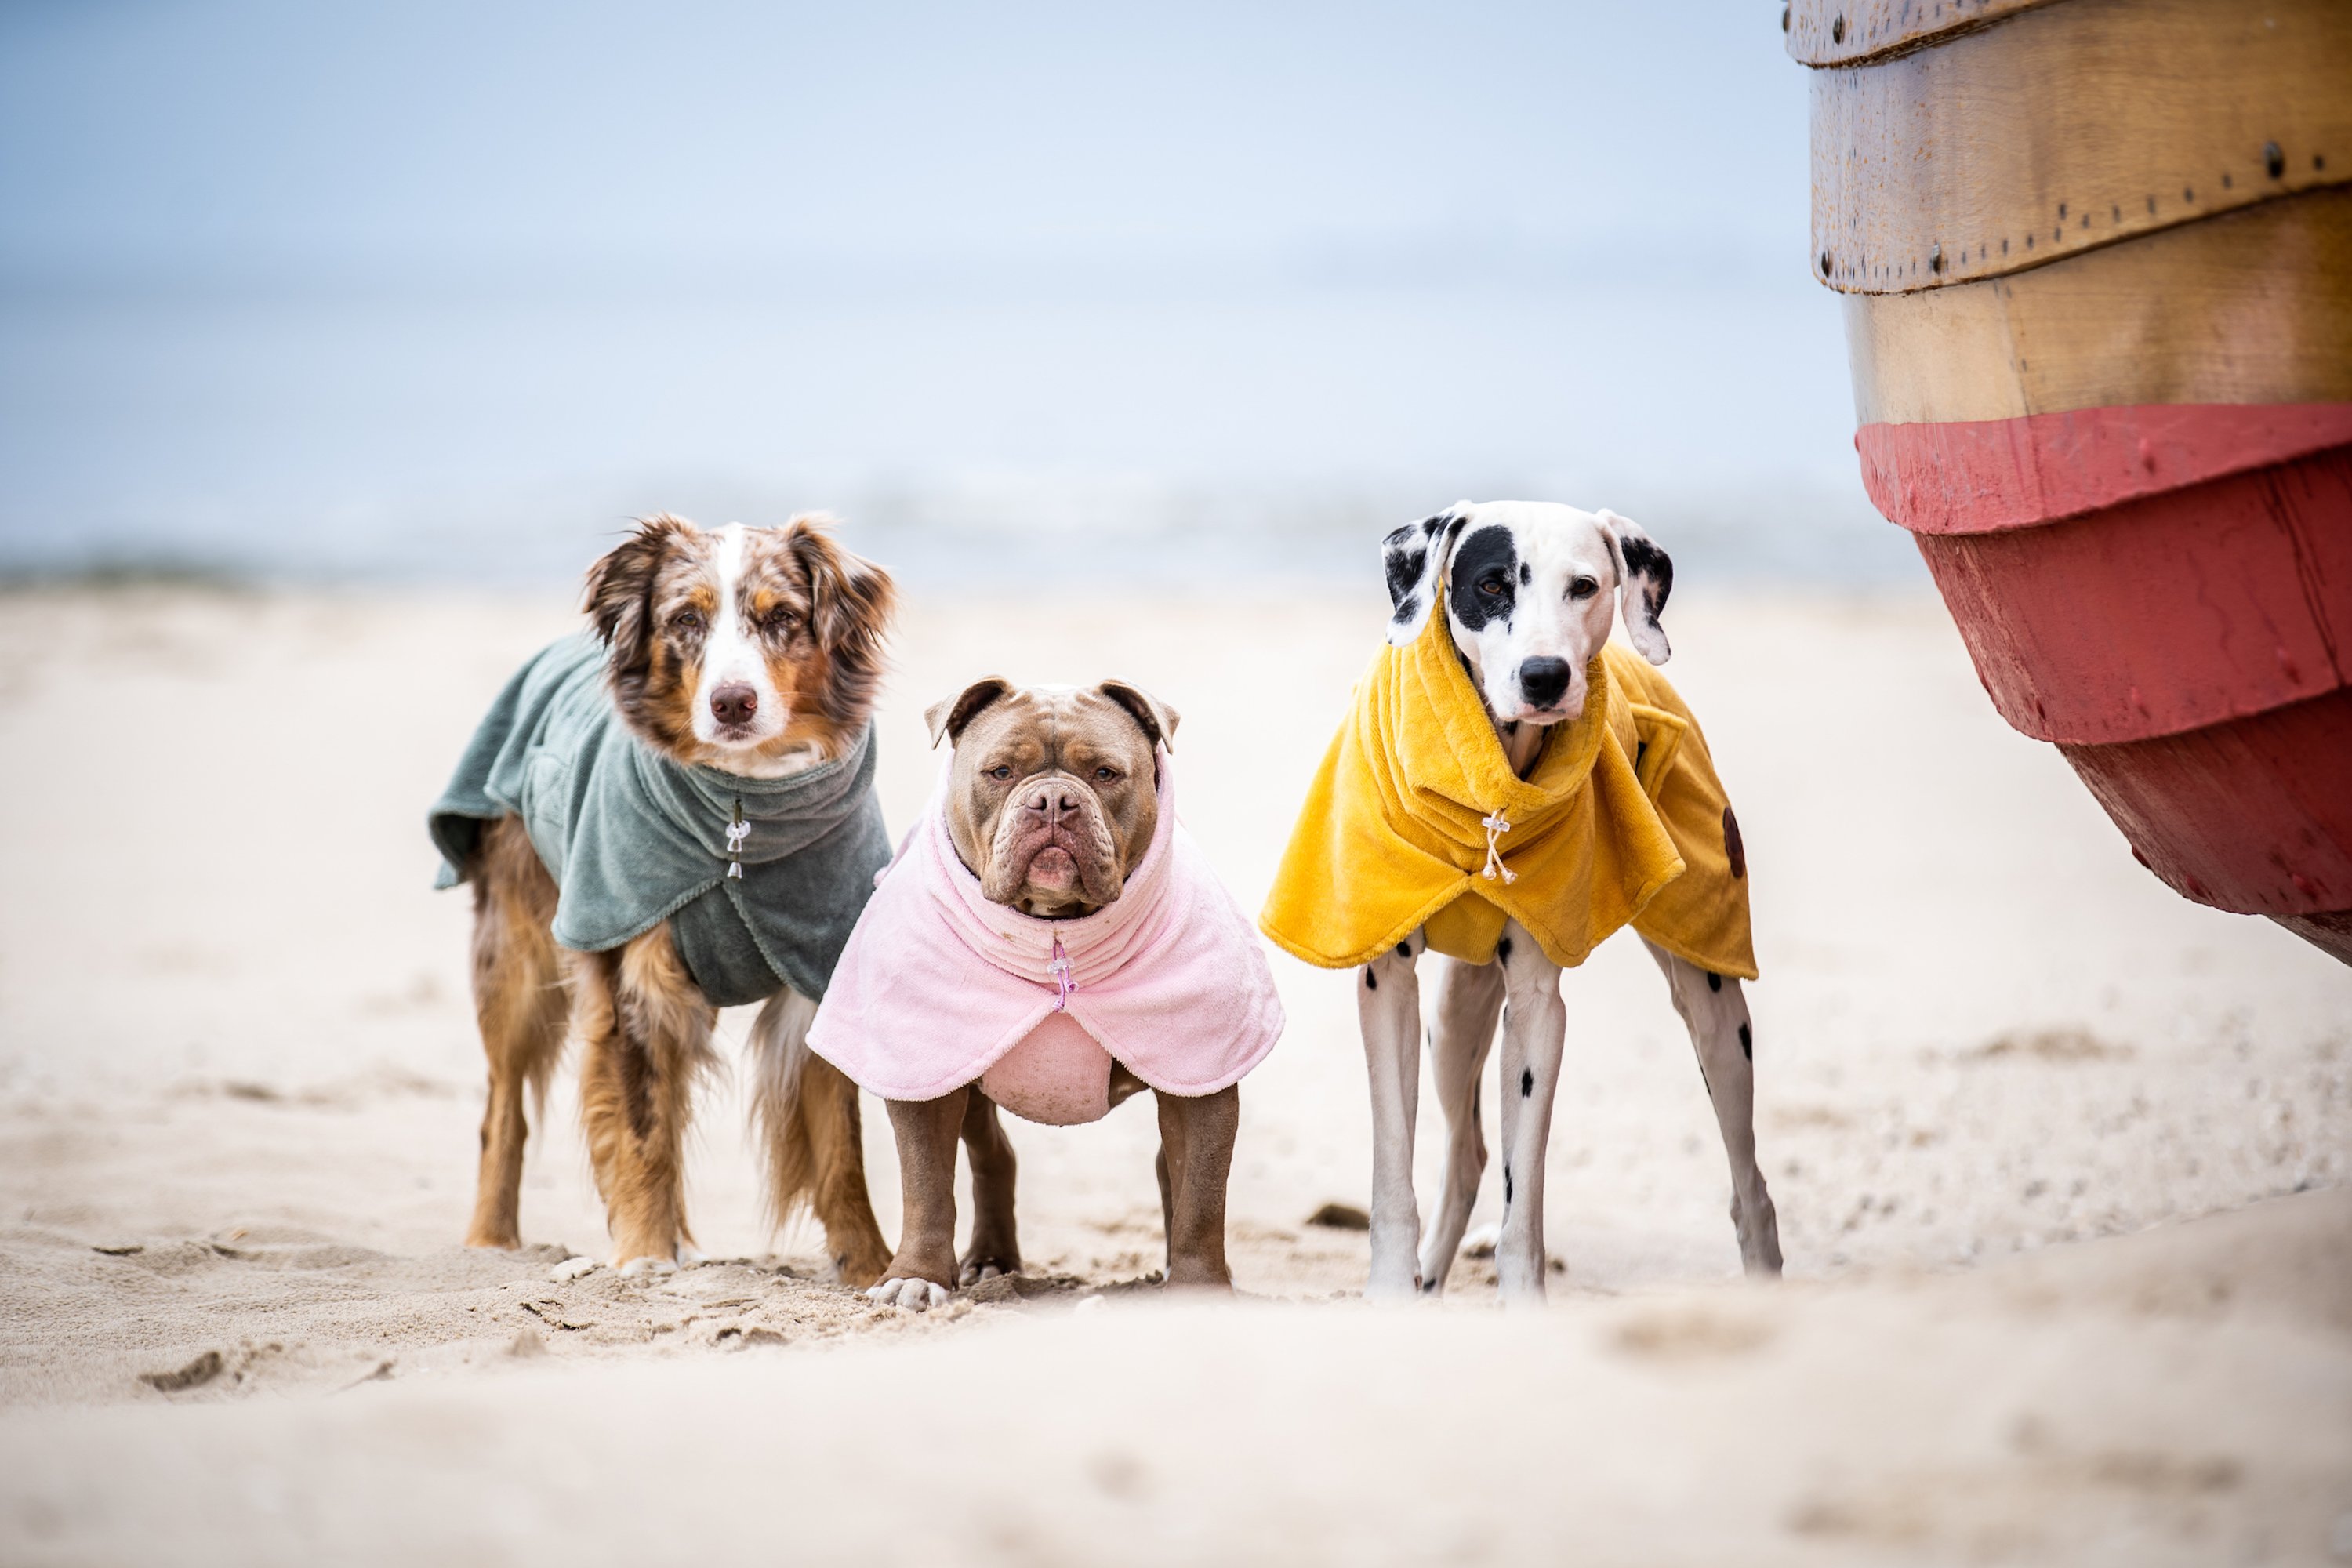 Drei mittelgroße Hunde mit Hundebademaenteln in Olive, Rosa und Gelb stehen am Strand 